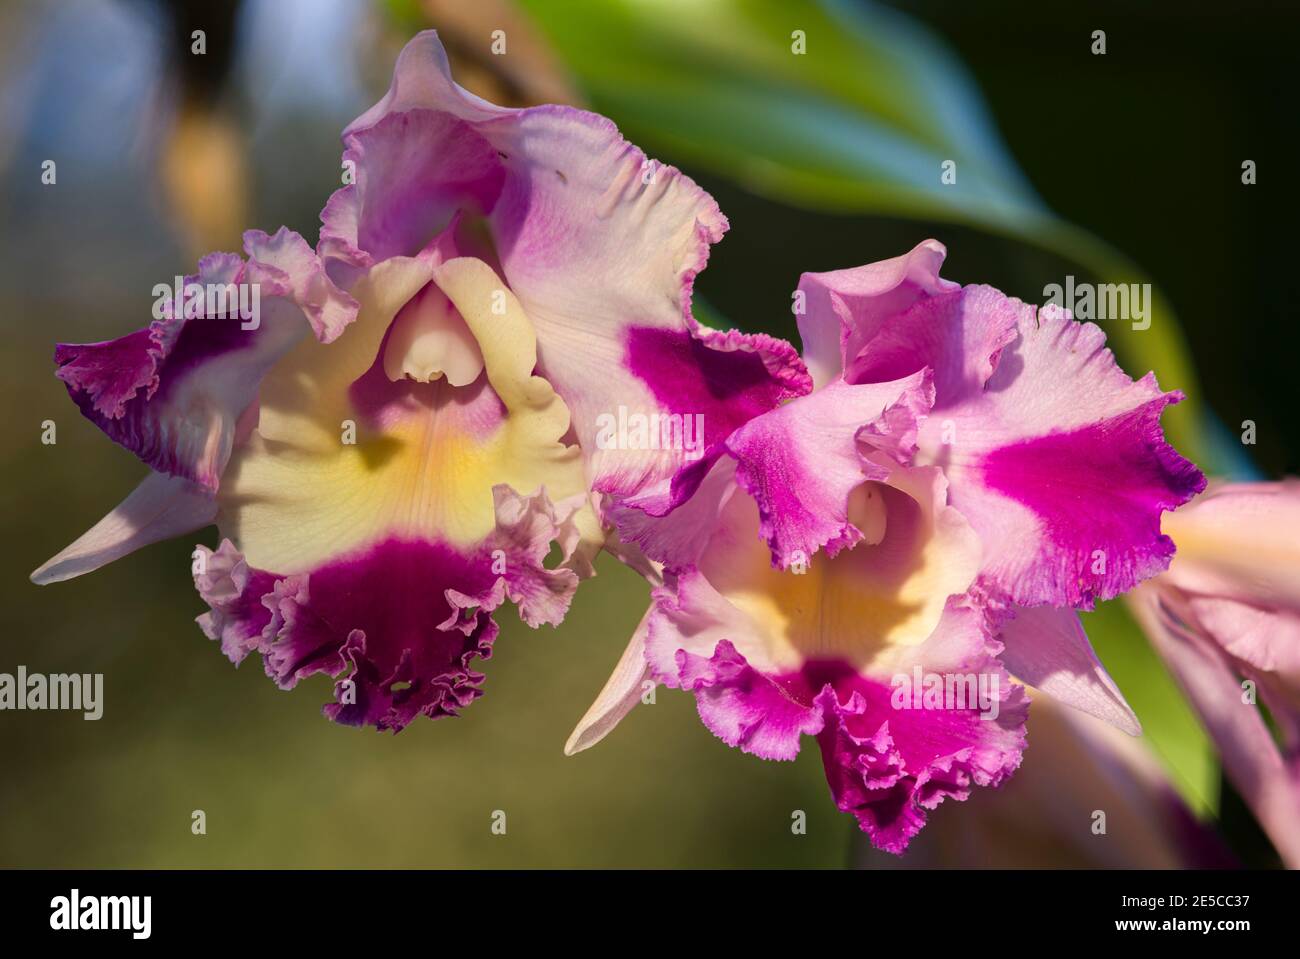 Les orchidées de Cattleya à Hawaï ont été photographiées et ont été prises en compte à l'aide de Focus Stacking pour maximiser la profondeur de champ. Banque D'Images